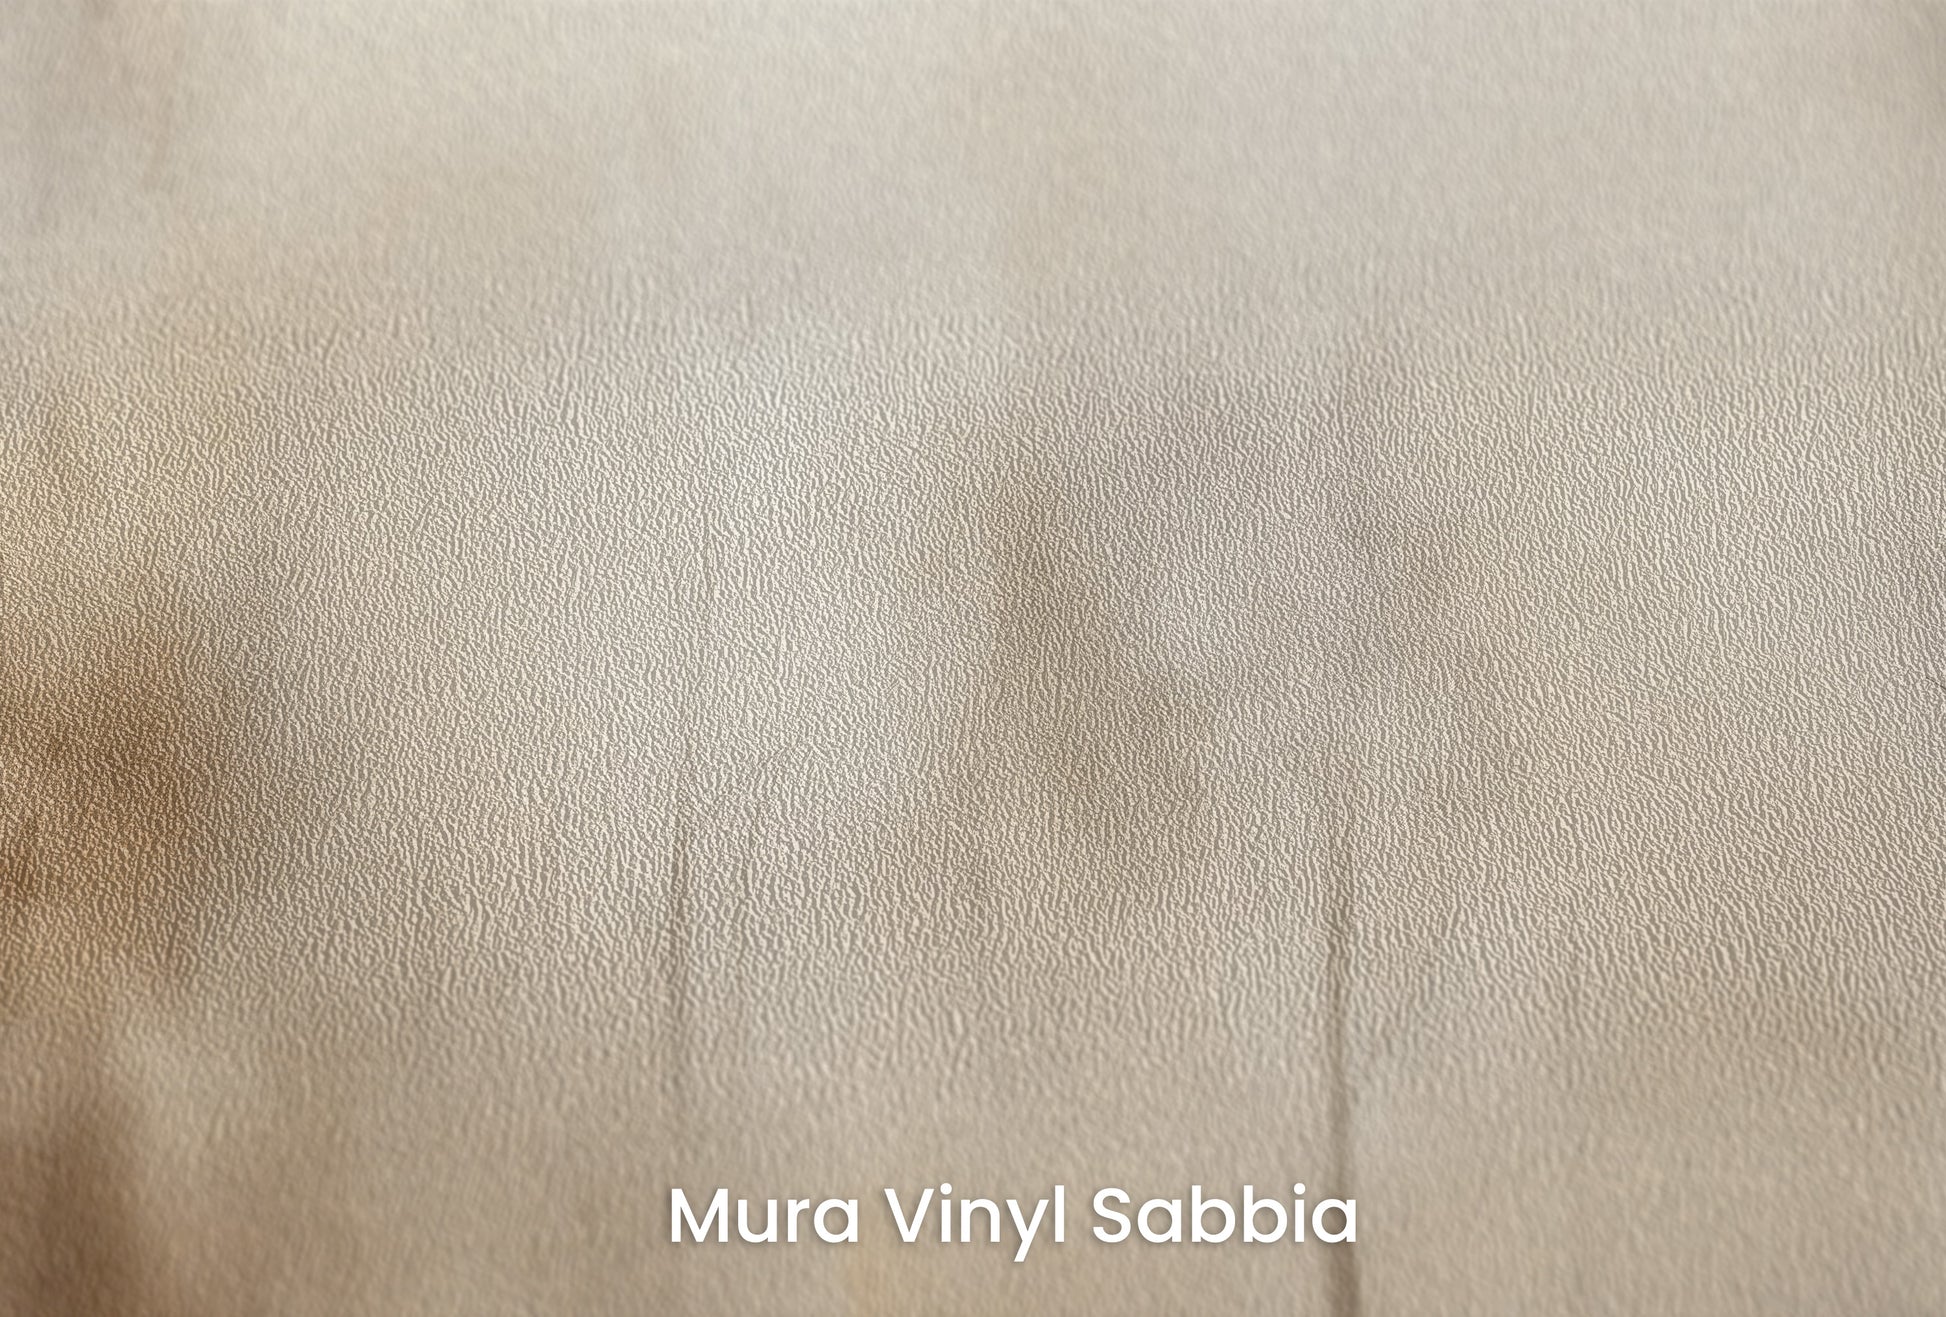 Zbliżenie na artystyczną fototapetę o nazwie SEPIA SILENCE FOREST MURAL na podłożu Mura Vinyl Sabbia struktura grubego ziarna piasku.